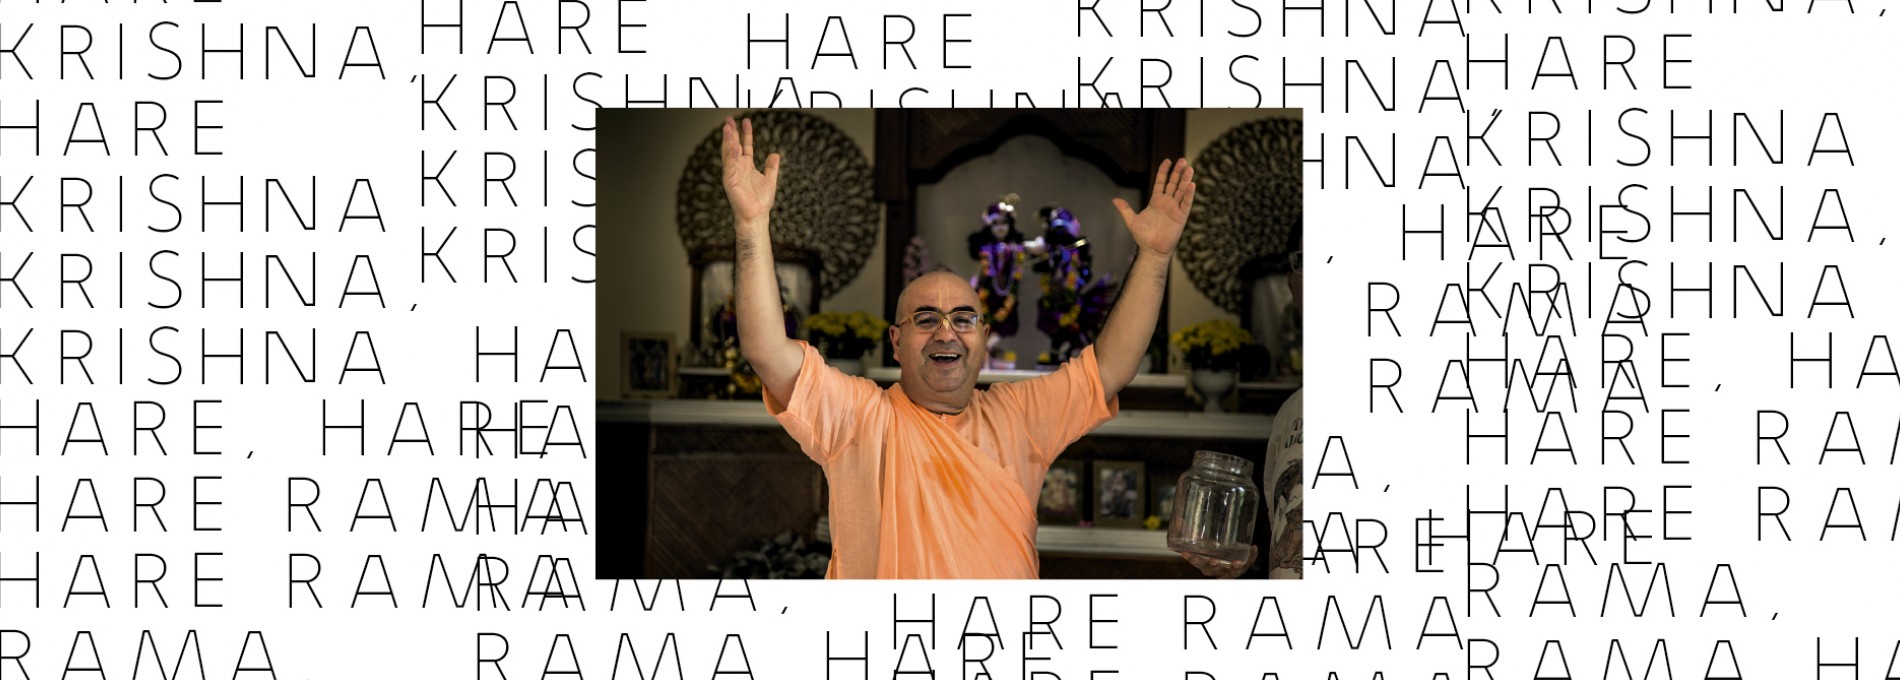 Hare Krishna, hare krishna krishna krishna hare, hare